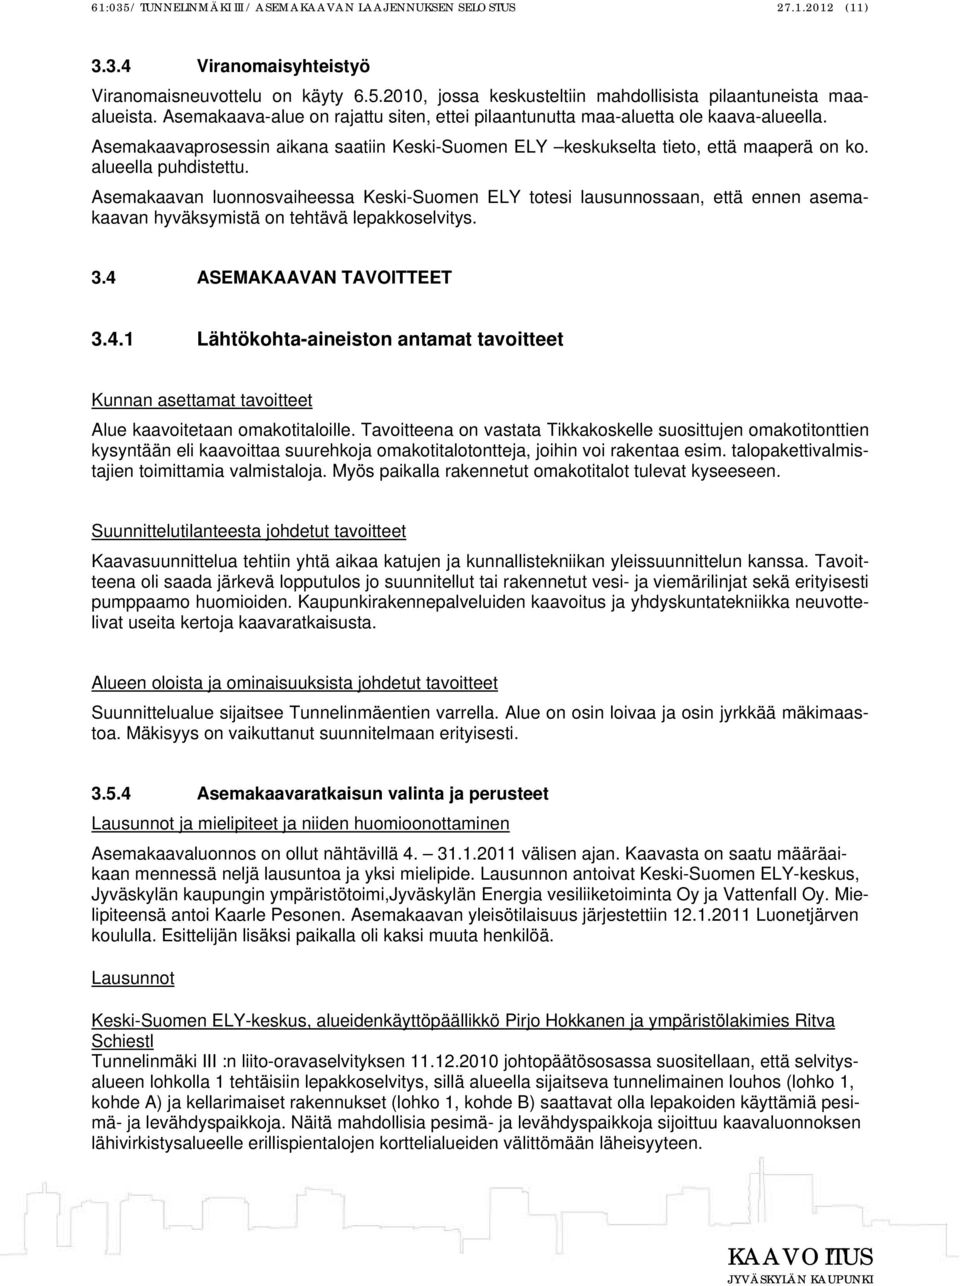 Asemakaavan luonnosvaiheessa Keski-Suomen ELY totesi lausunnossaan, että ennen asemakaavan hyväksymistä on tehtävä lepakkoselvitys. 3.4 